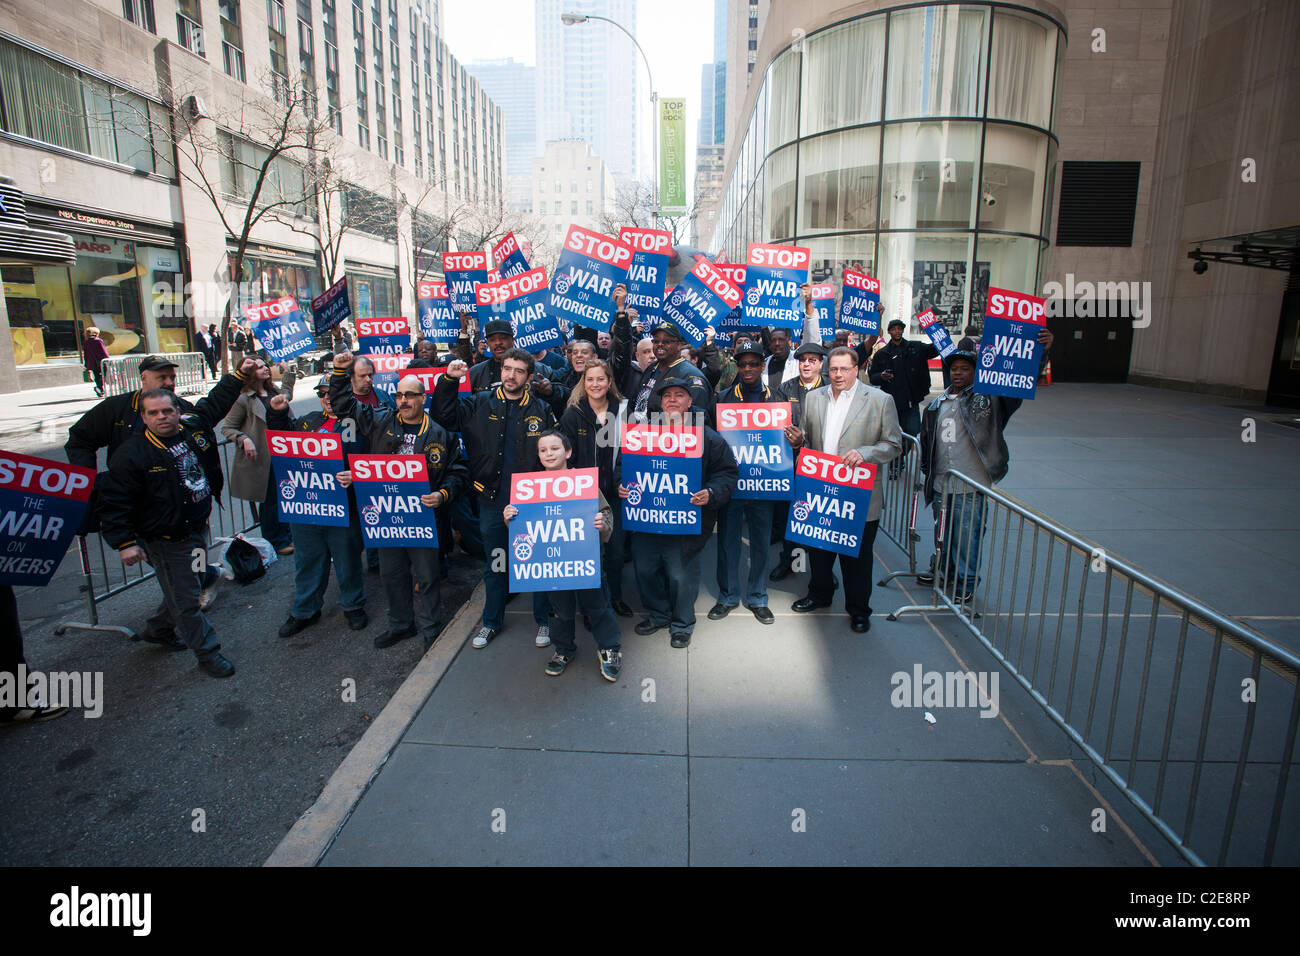 Les membres du rassemblement des Teamsters en face de la vente aux enchères de Christie's, à New York, pour protester contre l'utilisation de non-syndiqués Banque D'Images